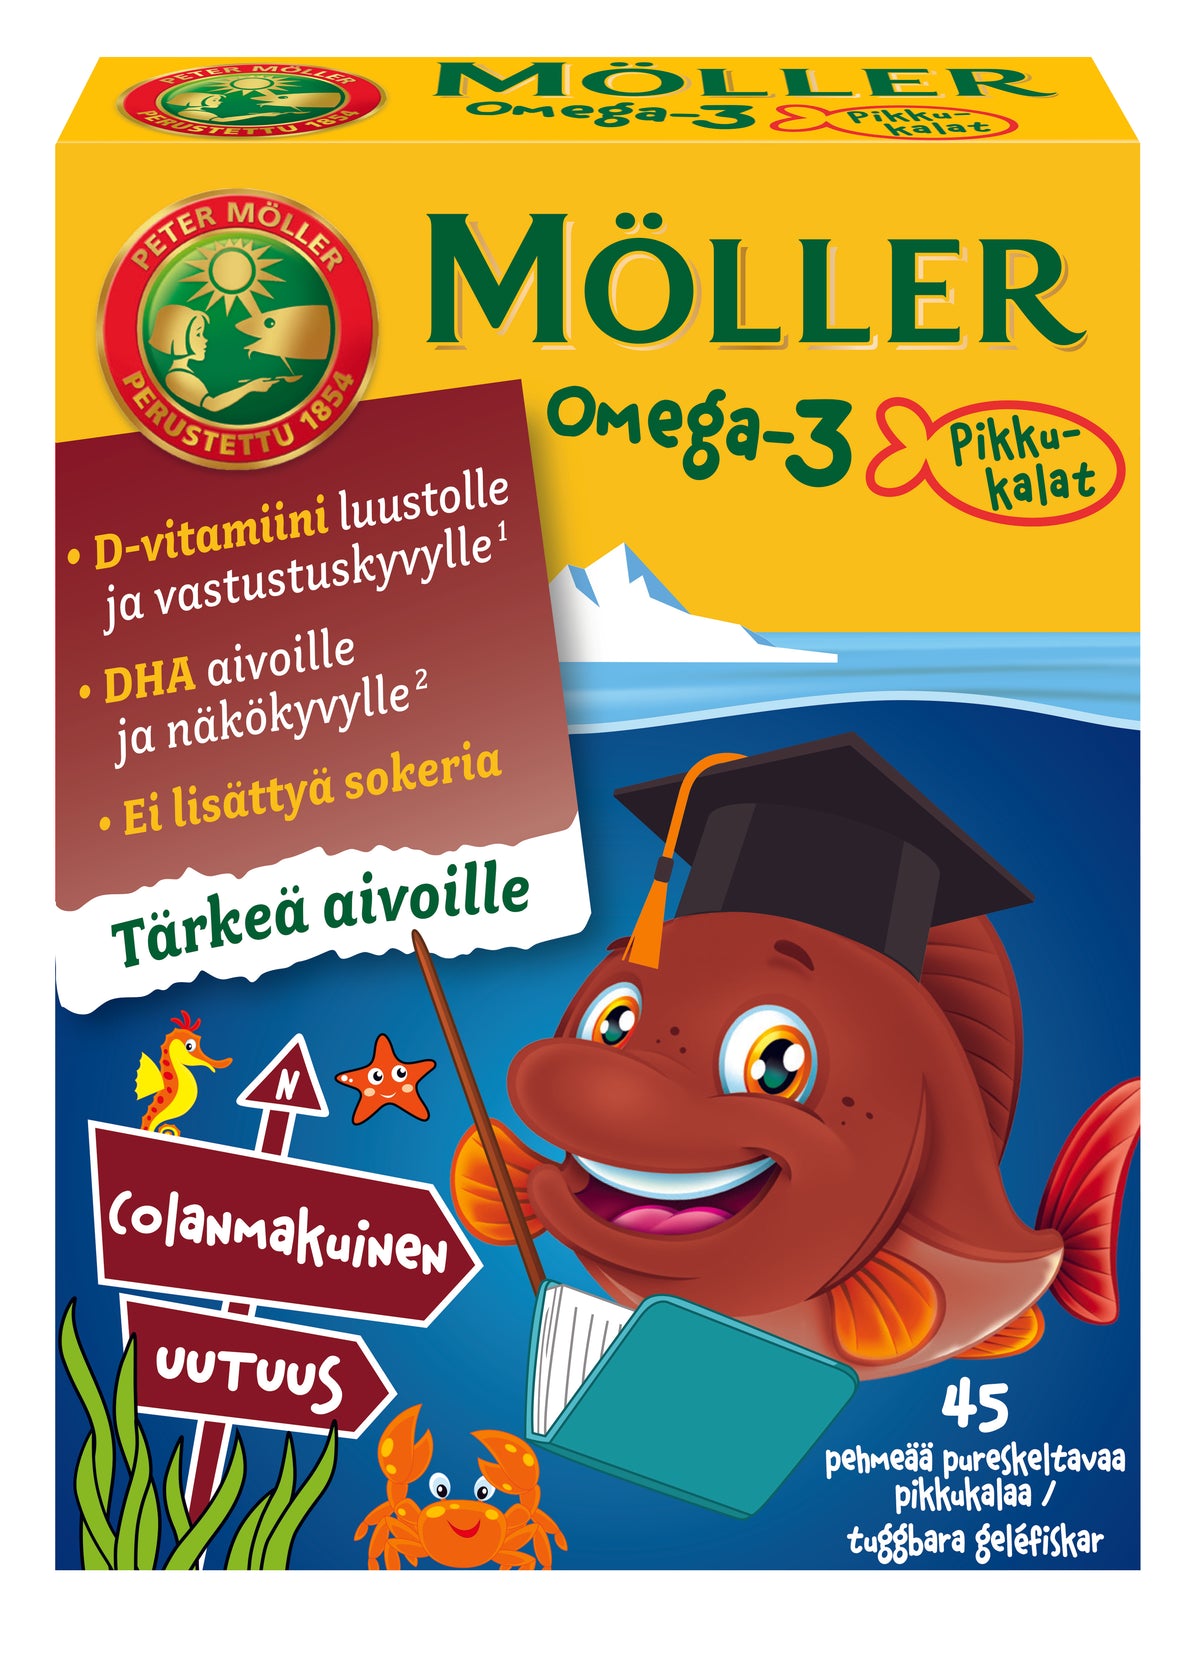 Möller Omega-3 Pikkukalat Colanmakuinen 45 pehmeää pureskeltavaa pikkukalaa - erä